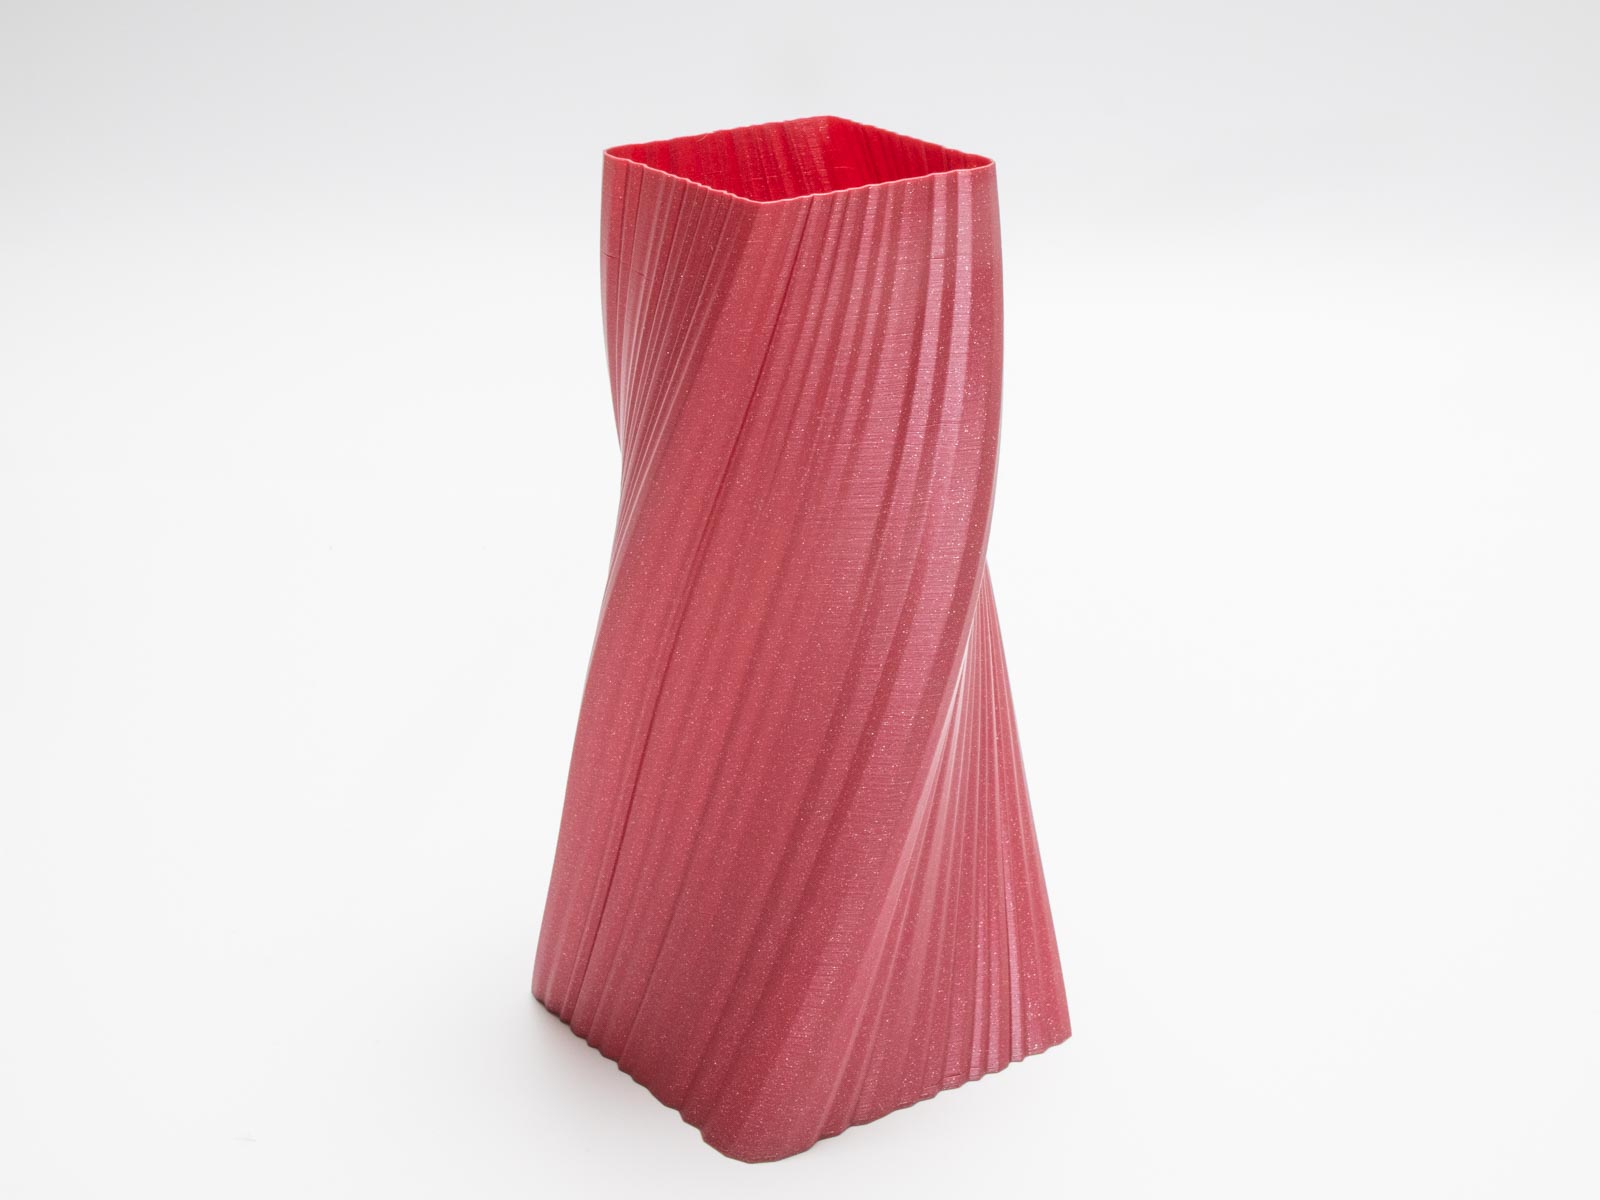 3D Printed Spiral Vase BREE